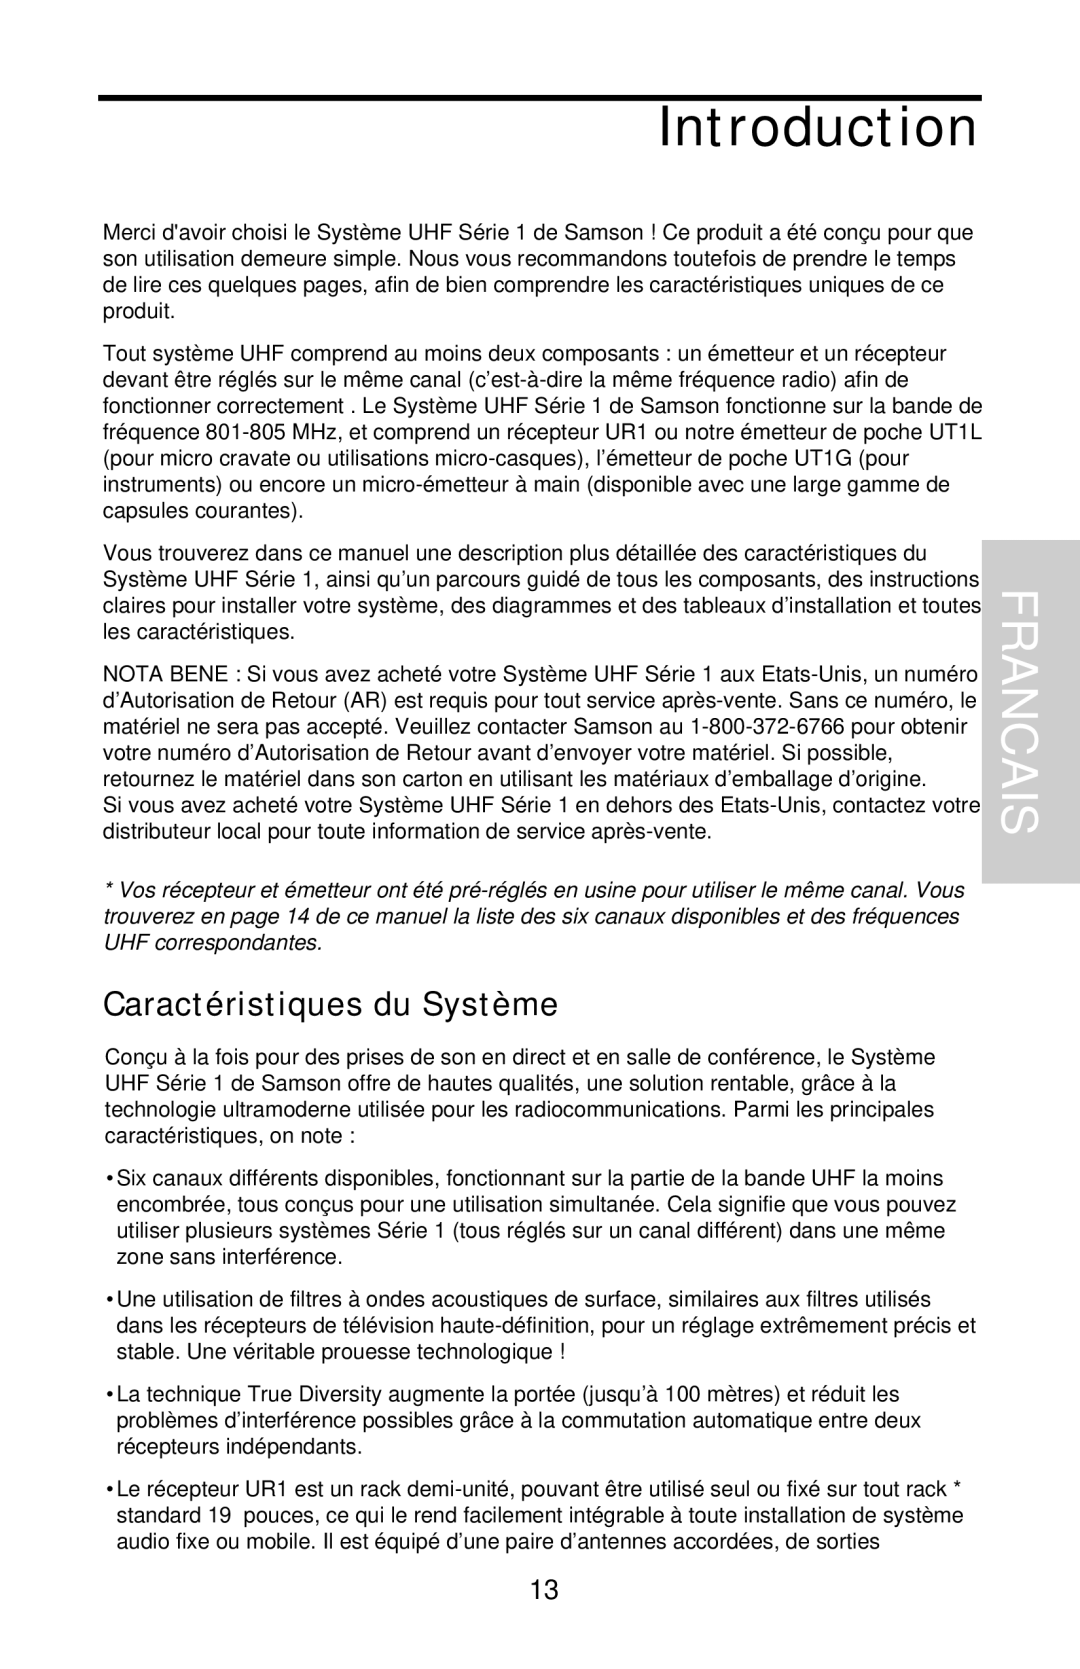 Samson UHF 801 owner manual Introduction, Francais, Caractéristiques du Système 